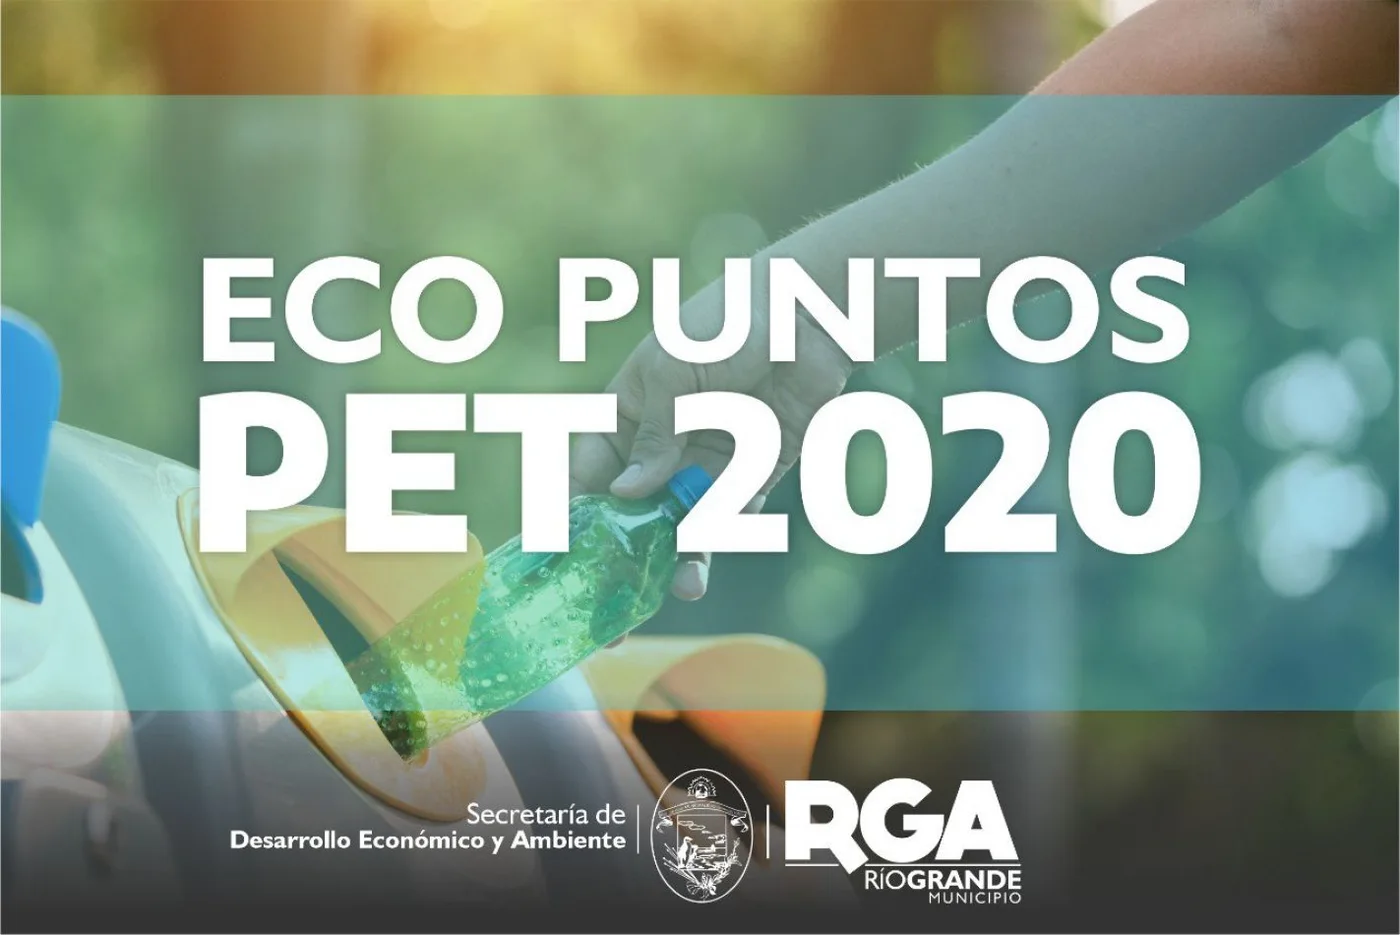 Río Grande cuenta con 28 Eco Puntos PET